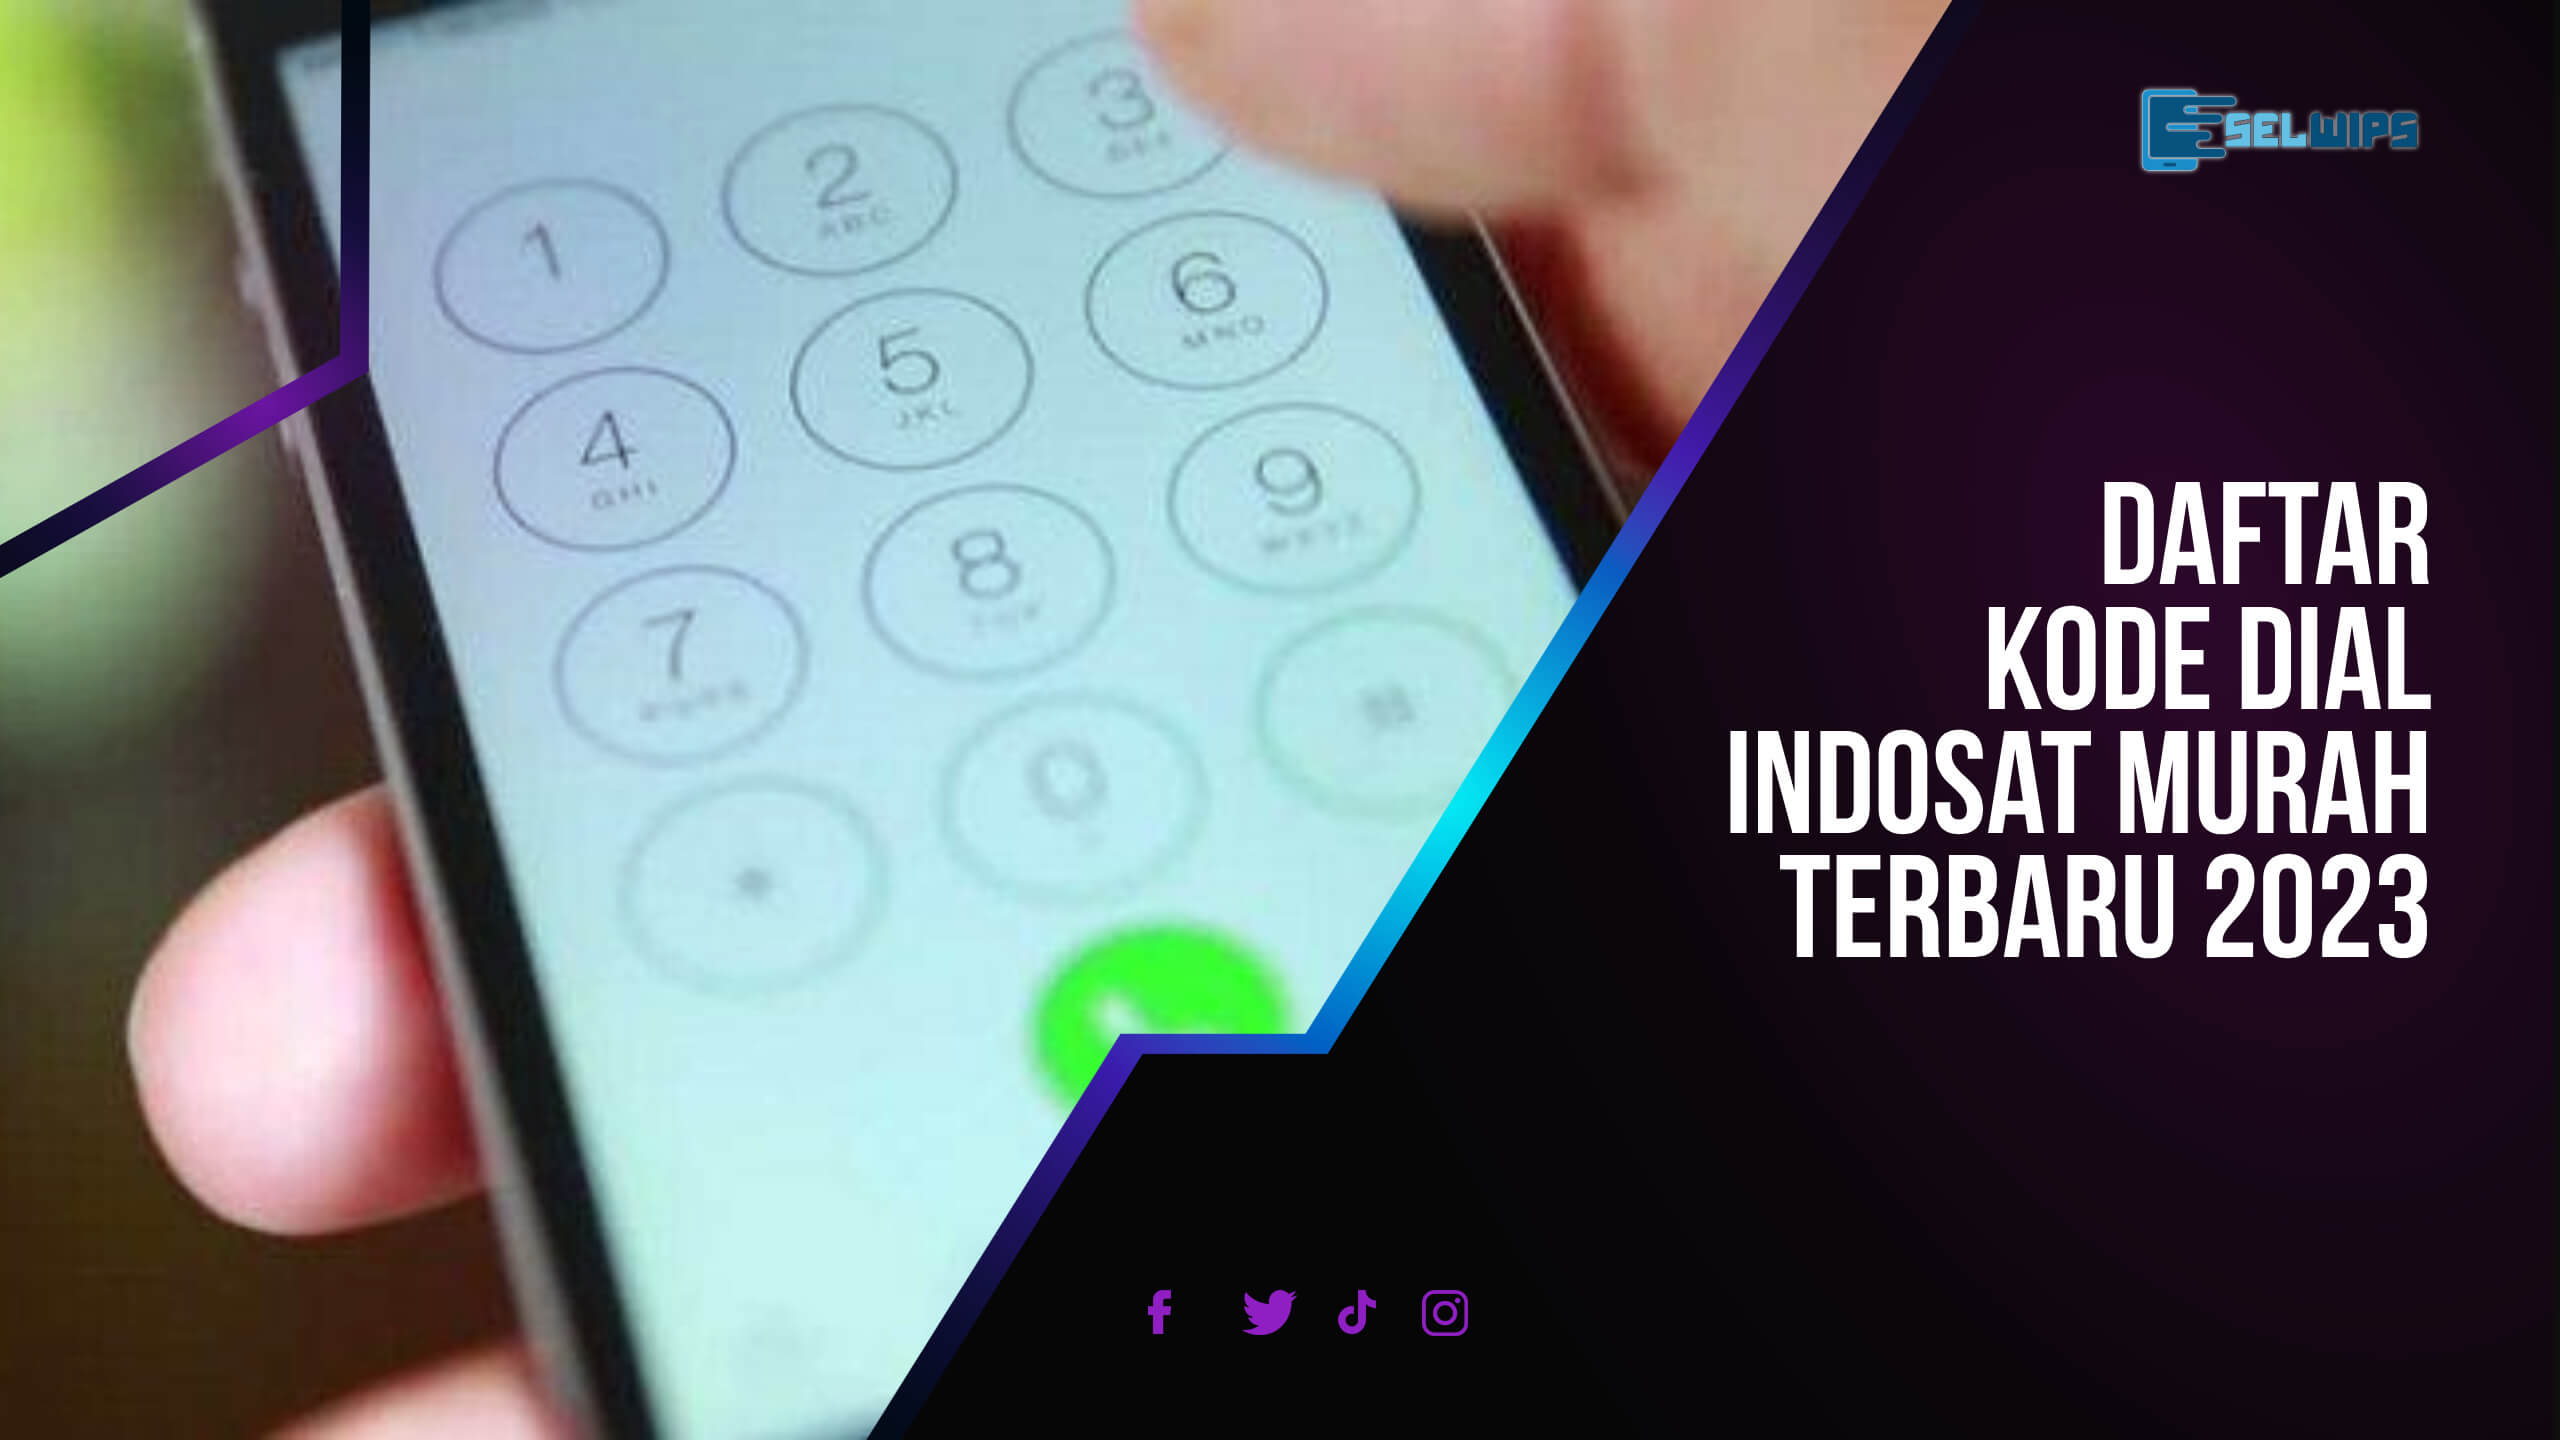 Daftar Kode Dial Indosat Murah